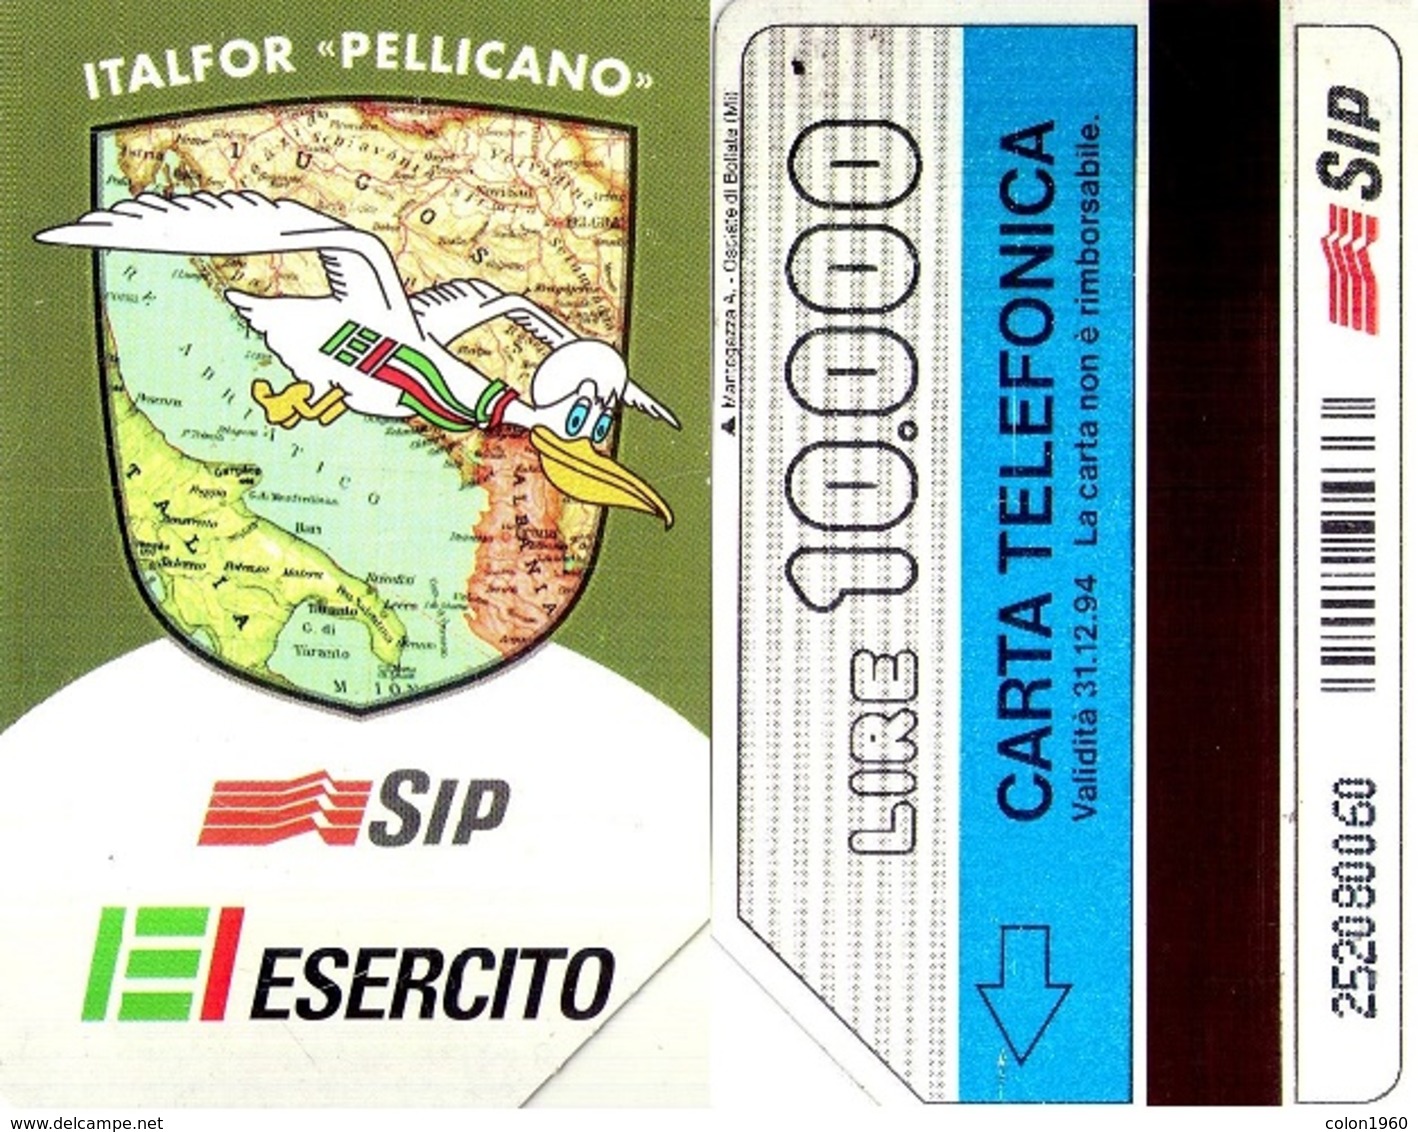 TARJETA TELEFONICA DE ITALIA. ITALFOR "PELLICANO", EJERCITO, 31-12-94. 10000L. 2290. (123) - Army